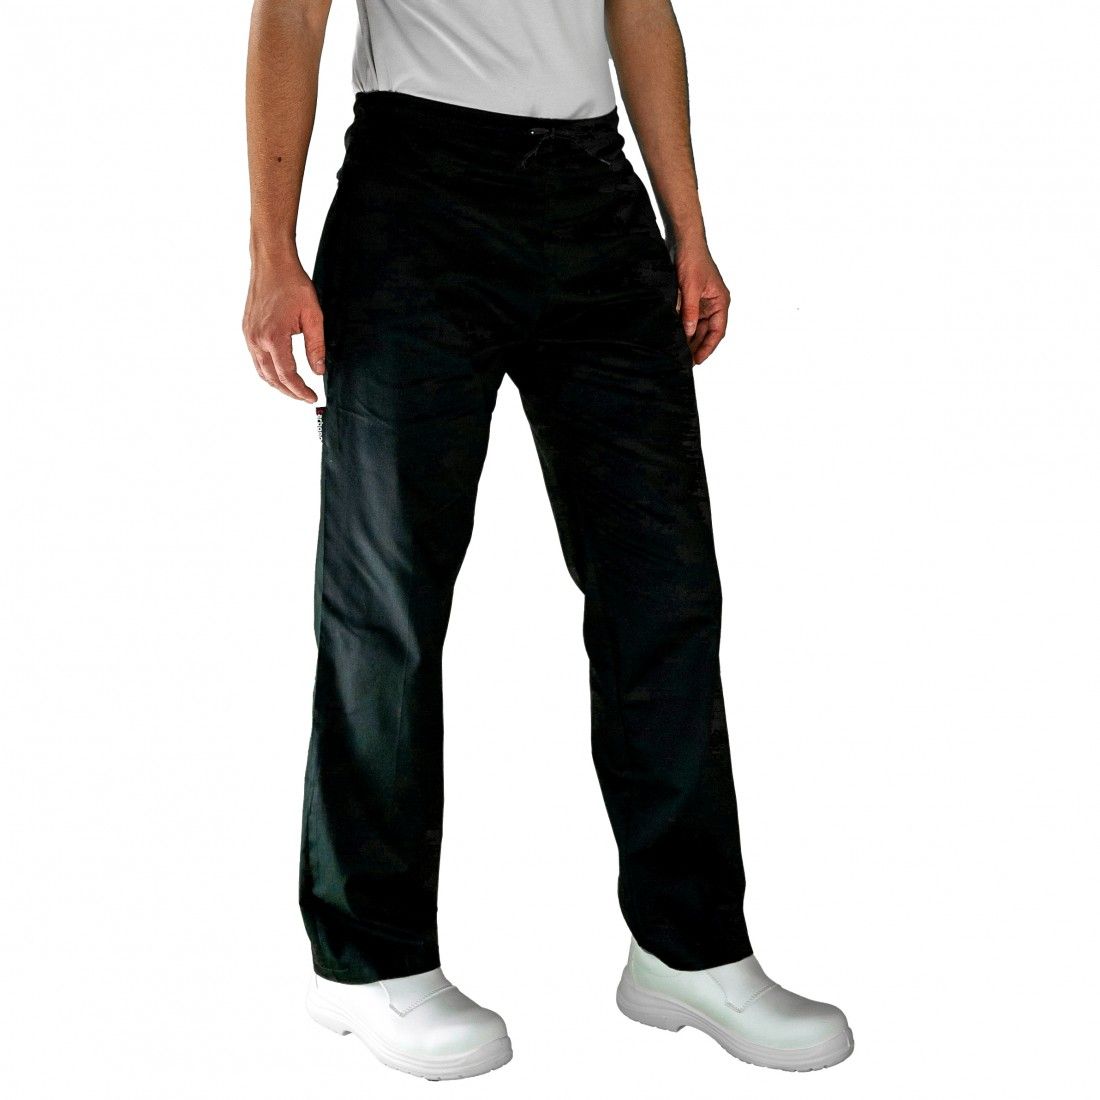 Pantalon de cuisine Noir Taille elastique bas réglable